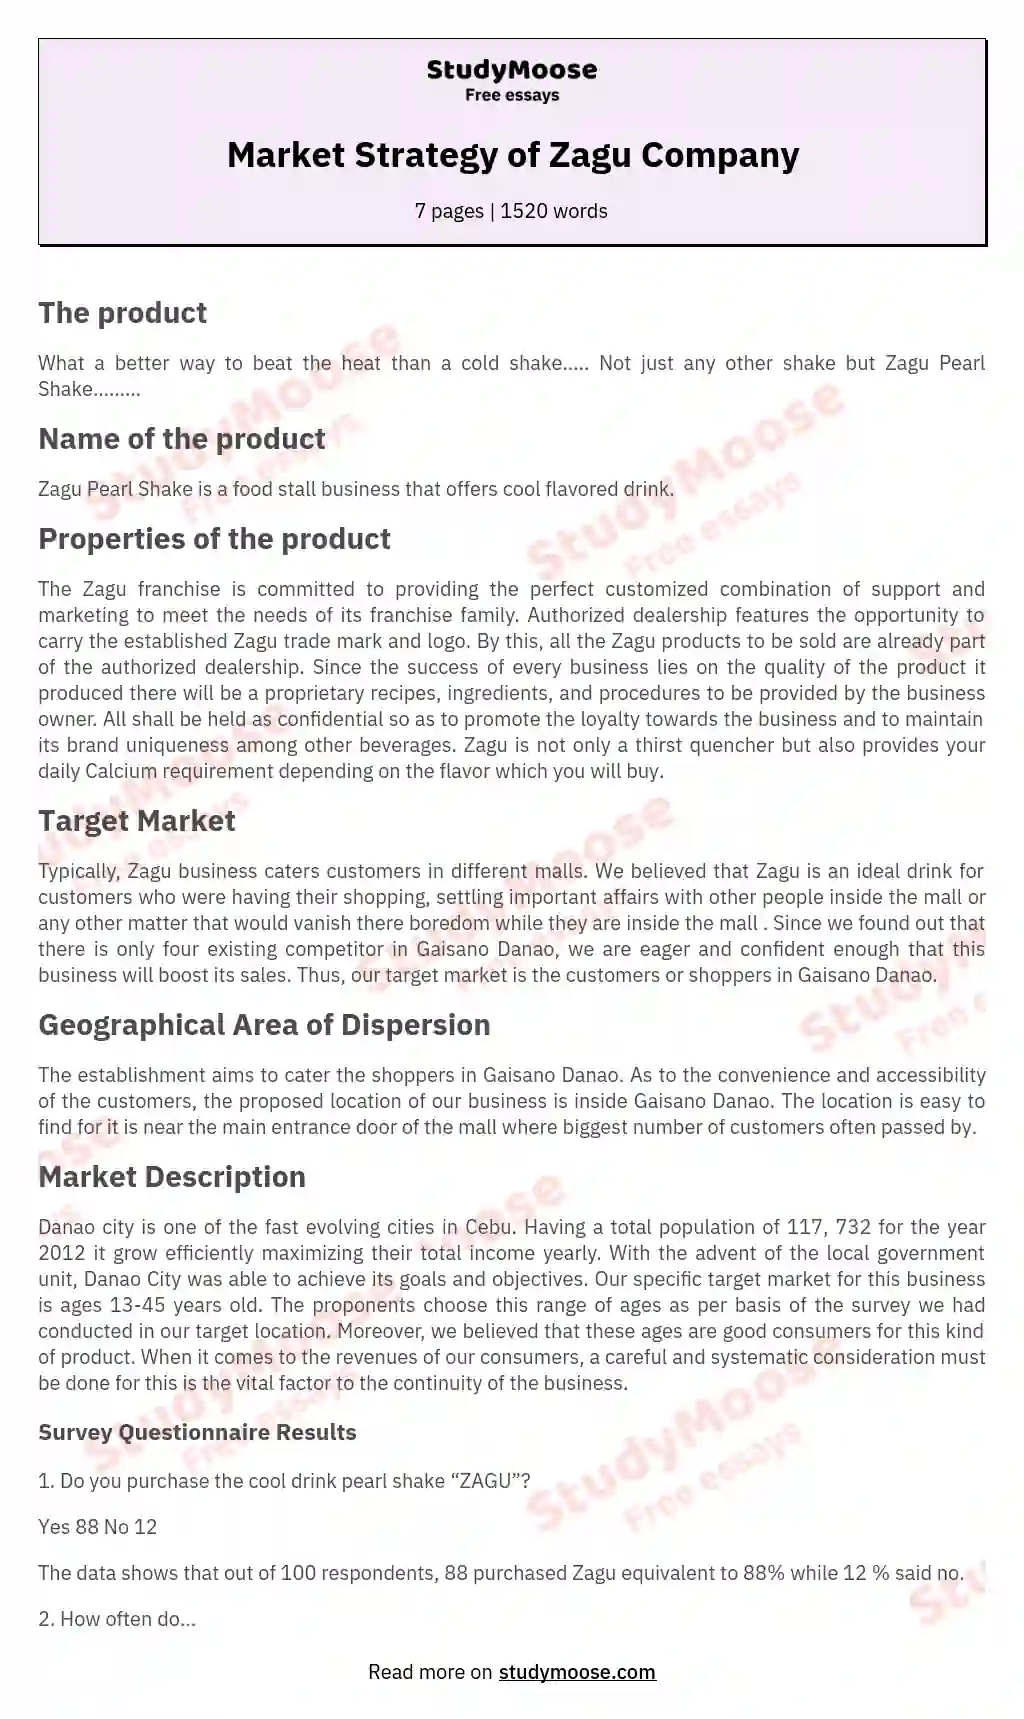 Market Strategy of Zagu Company essay